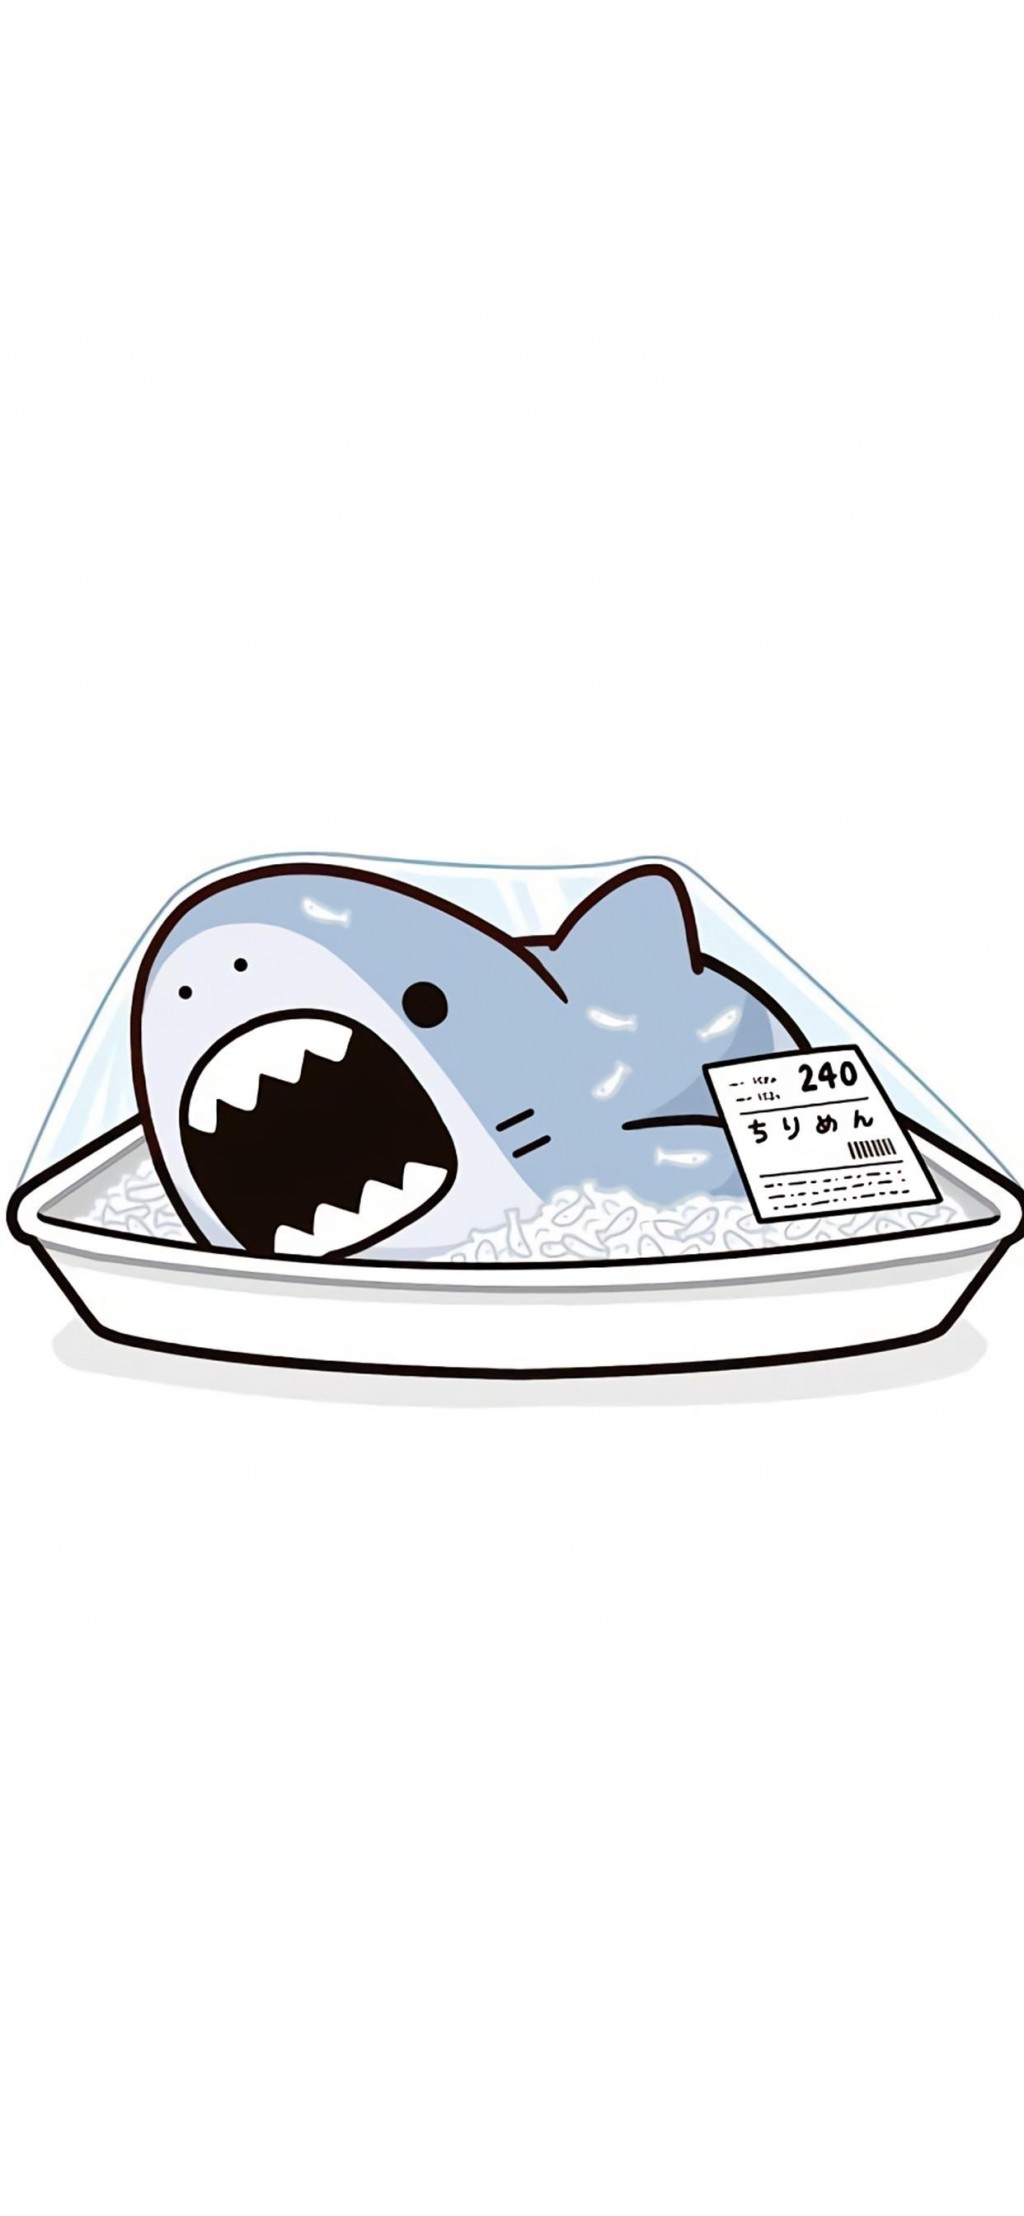 卡通小鲨鱼可爱手绘插画手机壁纸